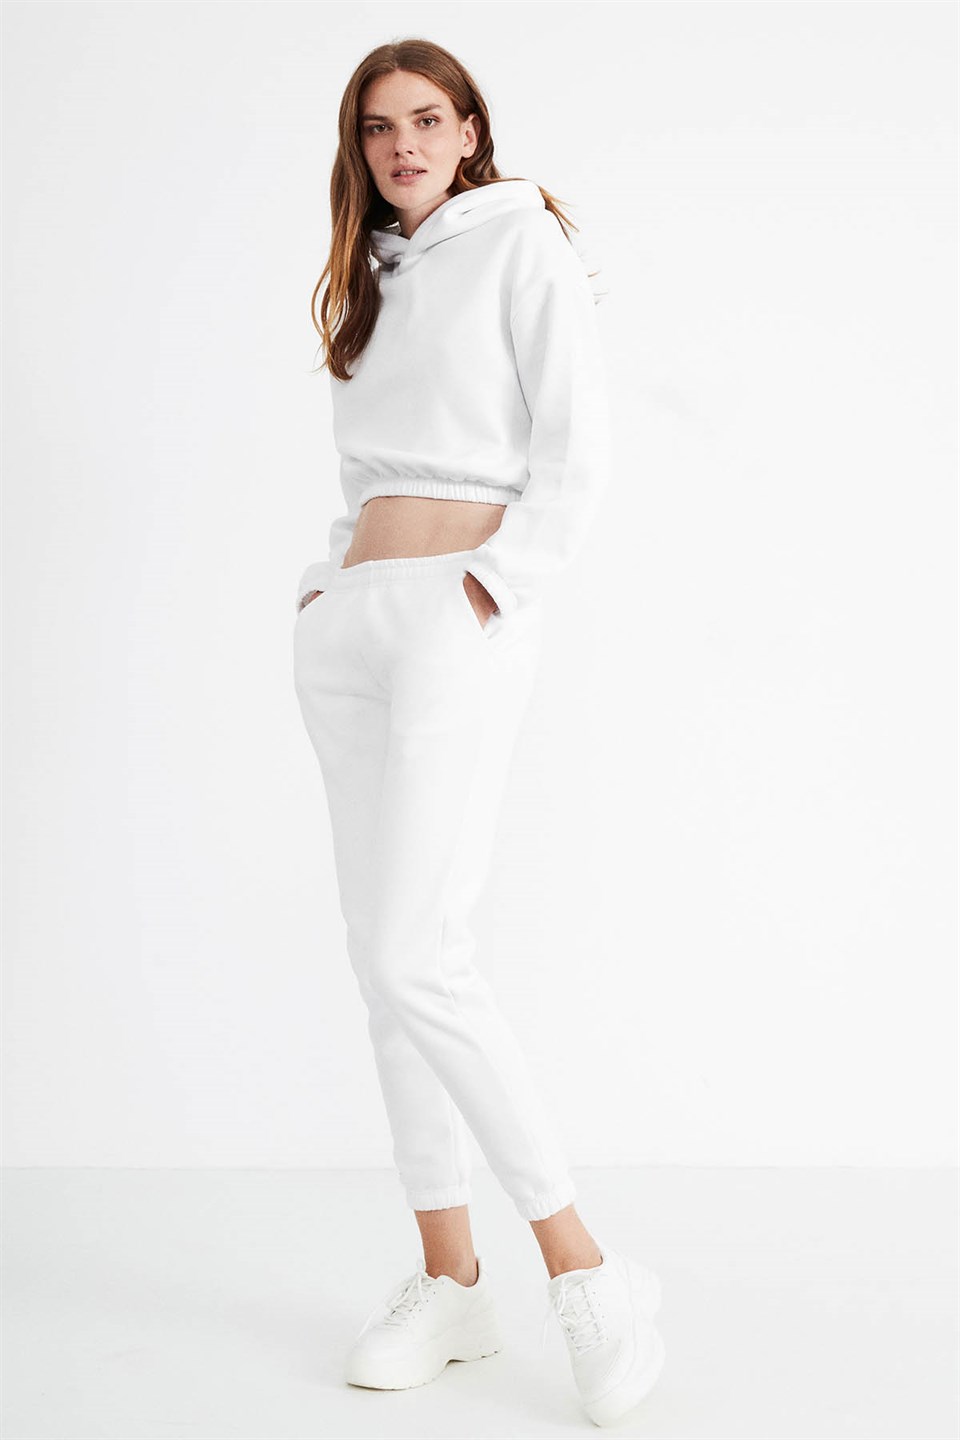 SOFIA Kadın Beyaz Düz Renk Kapüşonlu Comfort Fit Eşofman Takımı